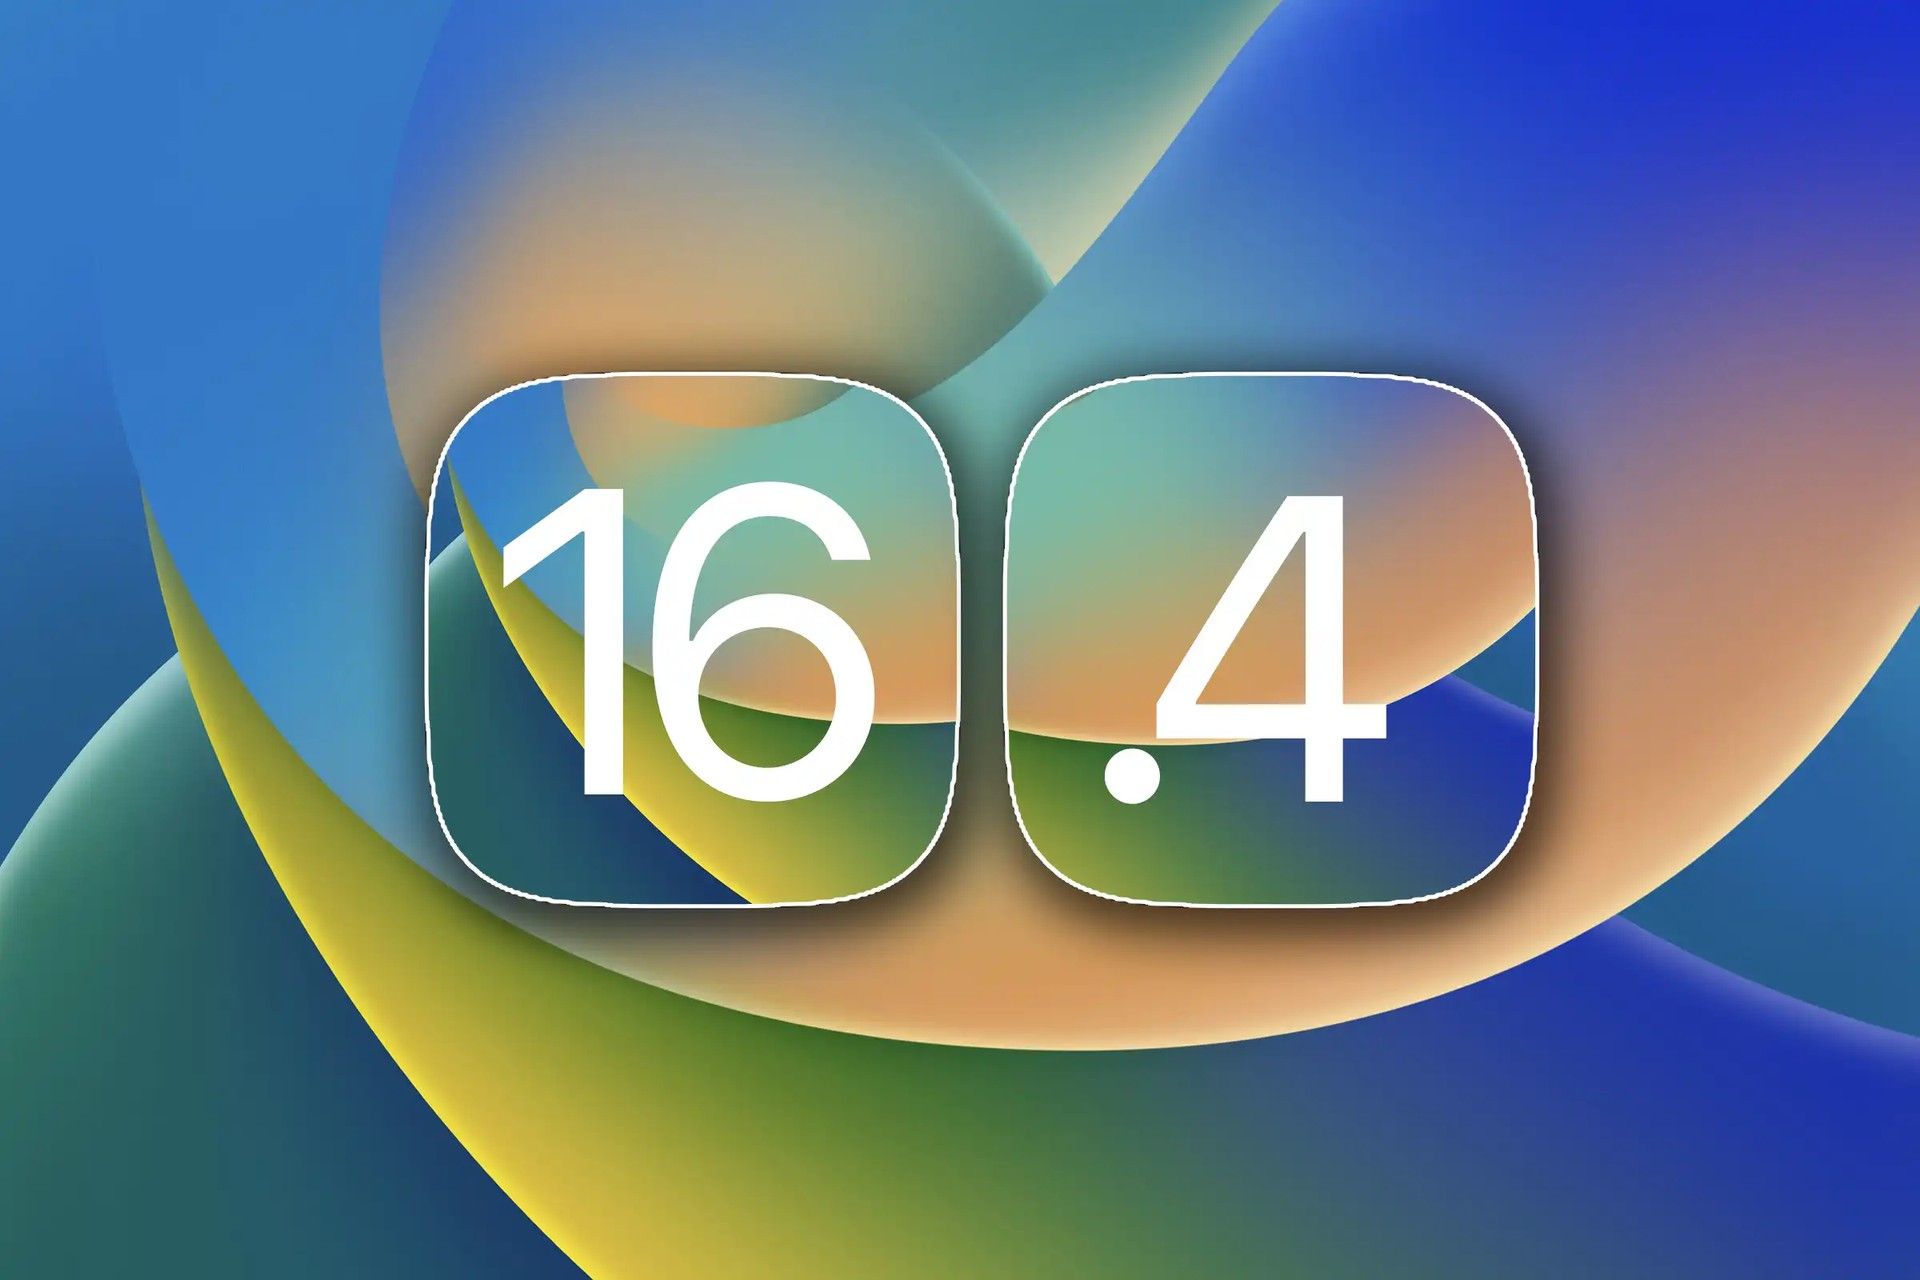 iOS 16.4